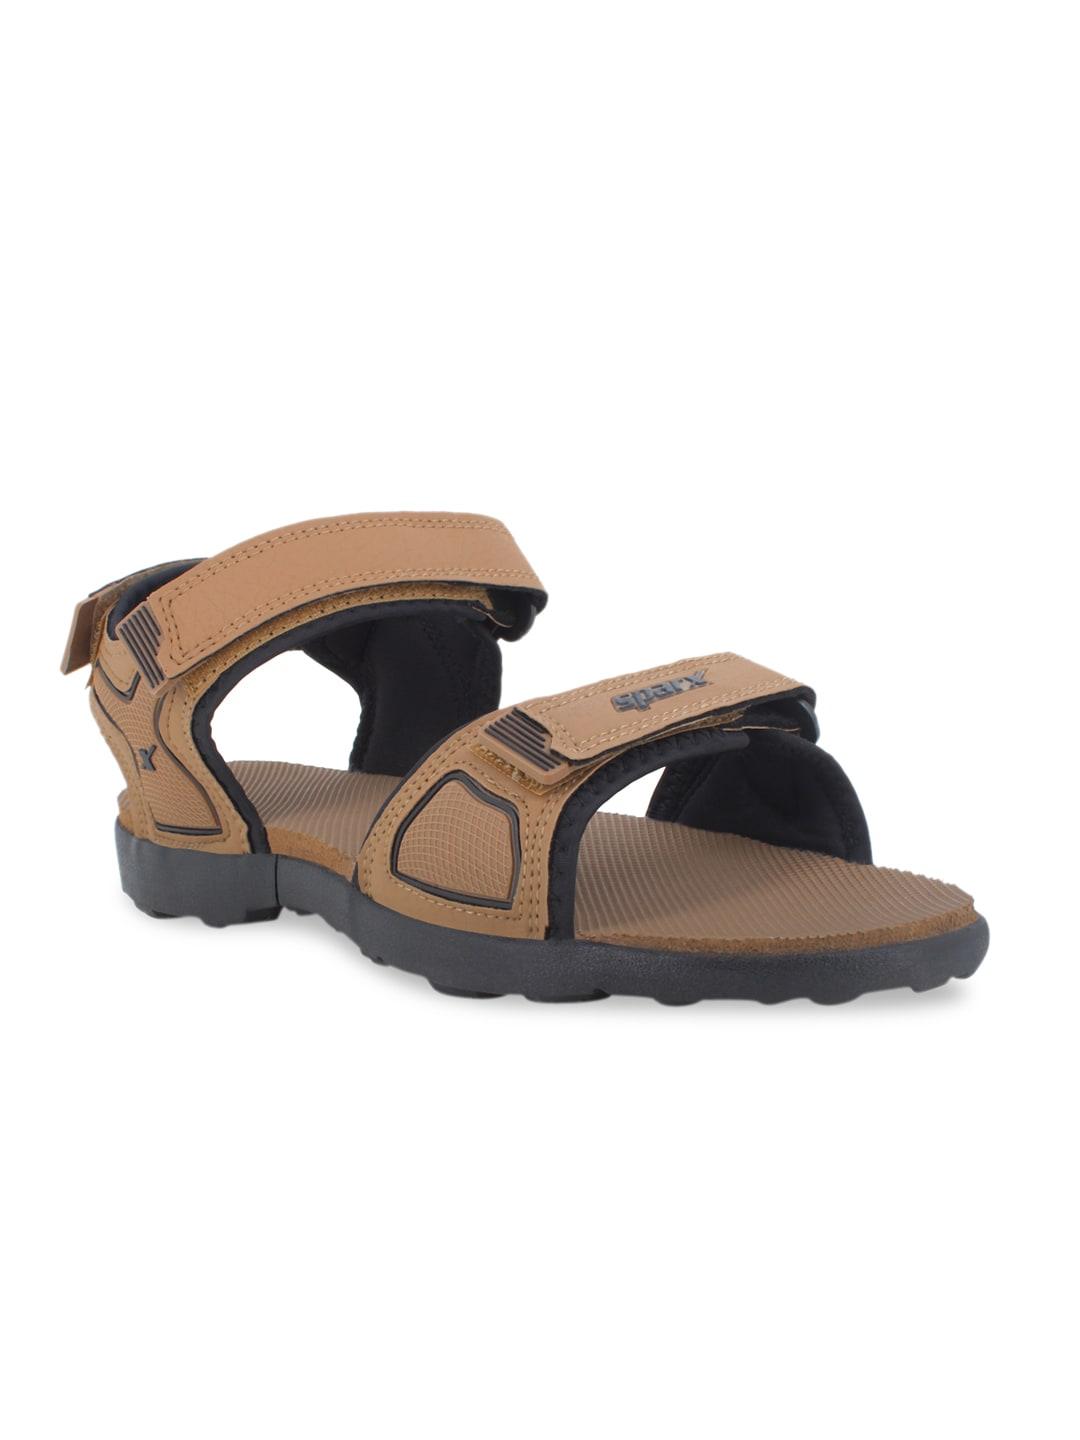 sparx-men-camel-brown-&-black-sports-sandals